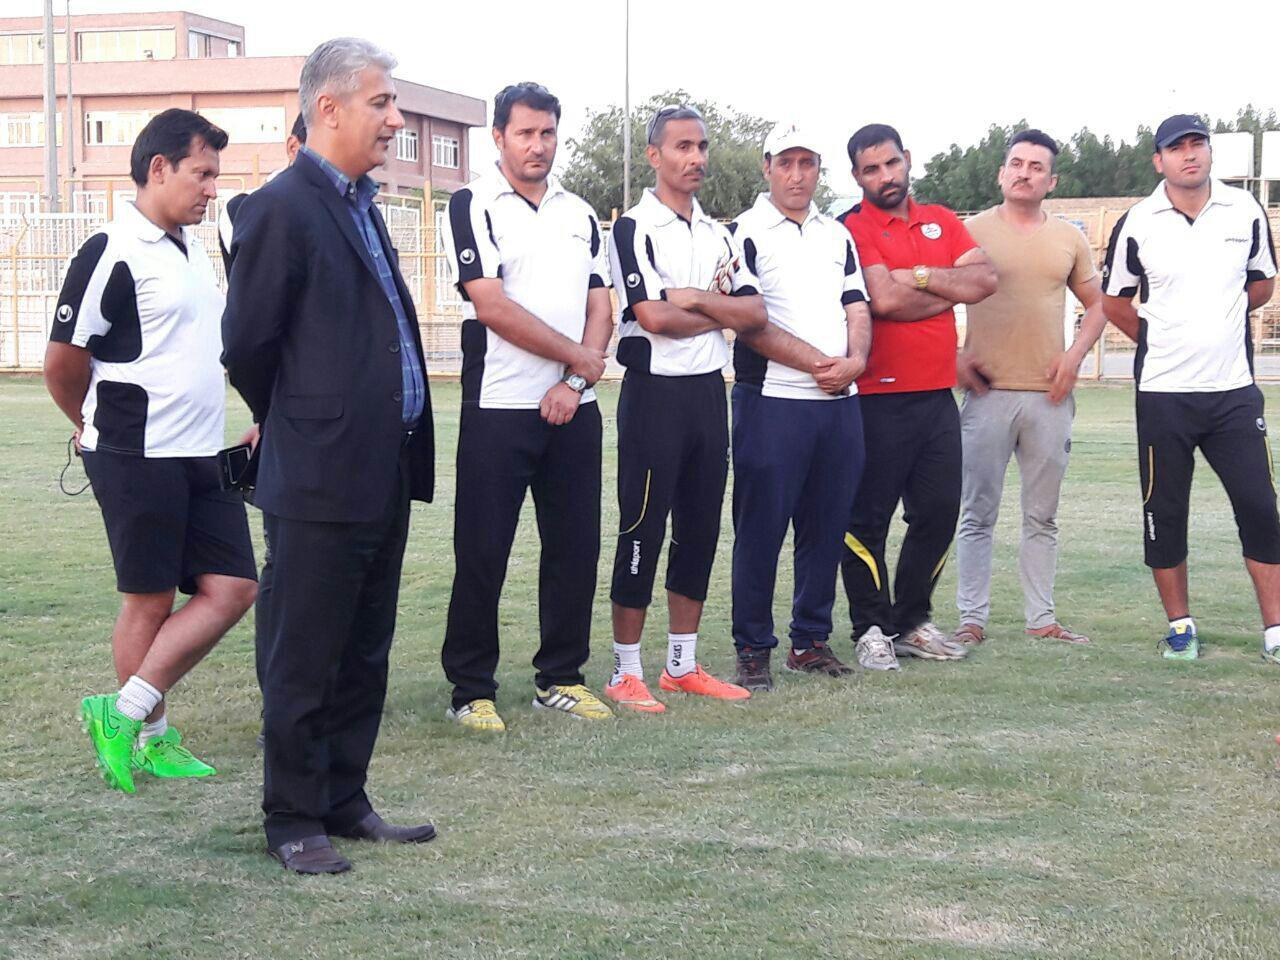 قول پاداش ویژه برای بازیکنان نفت درصورت پیروزی مقابل شهرداری ماهشهر